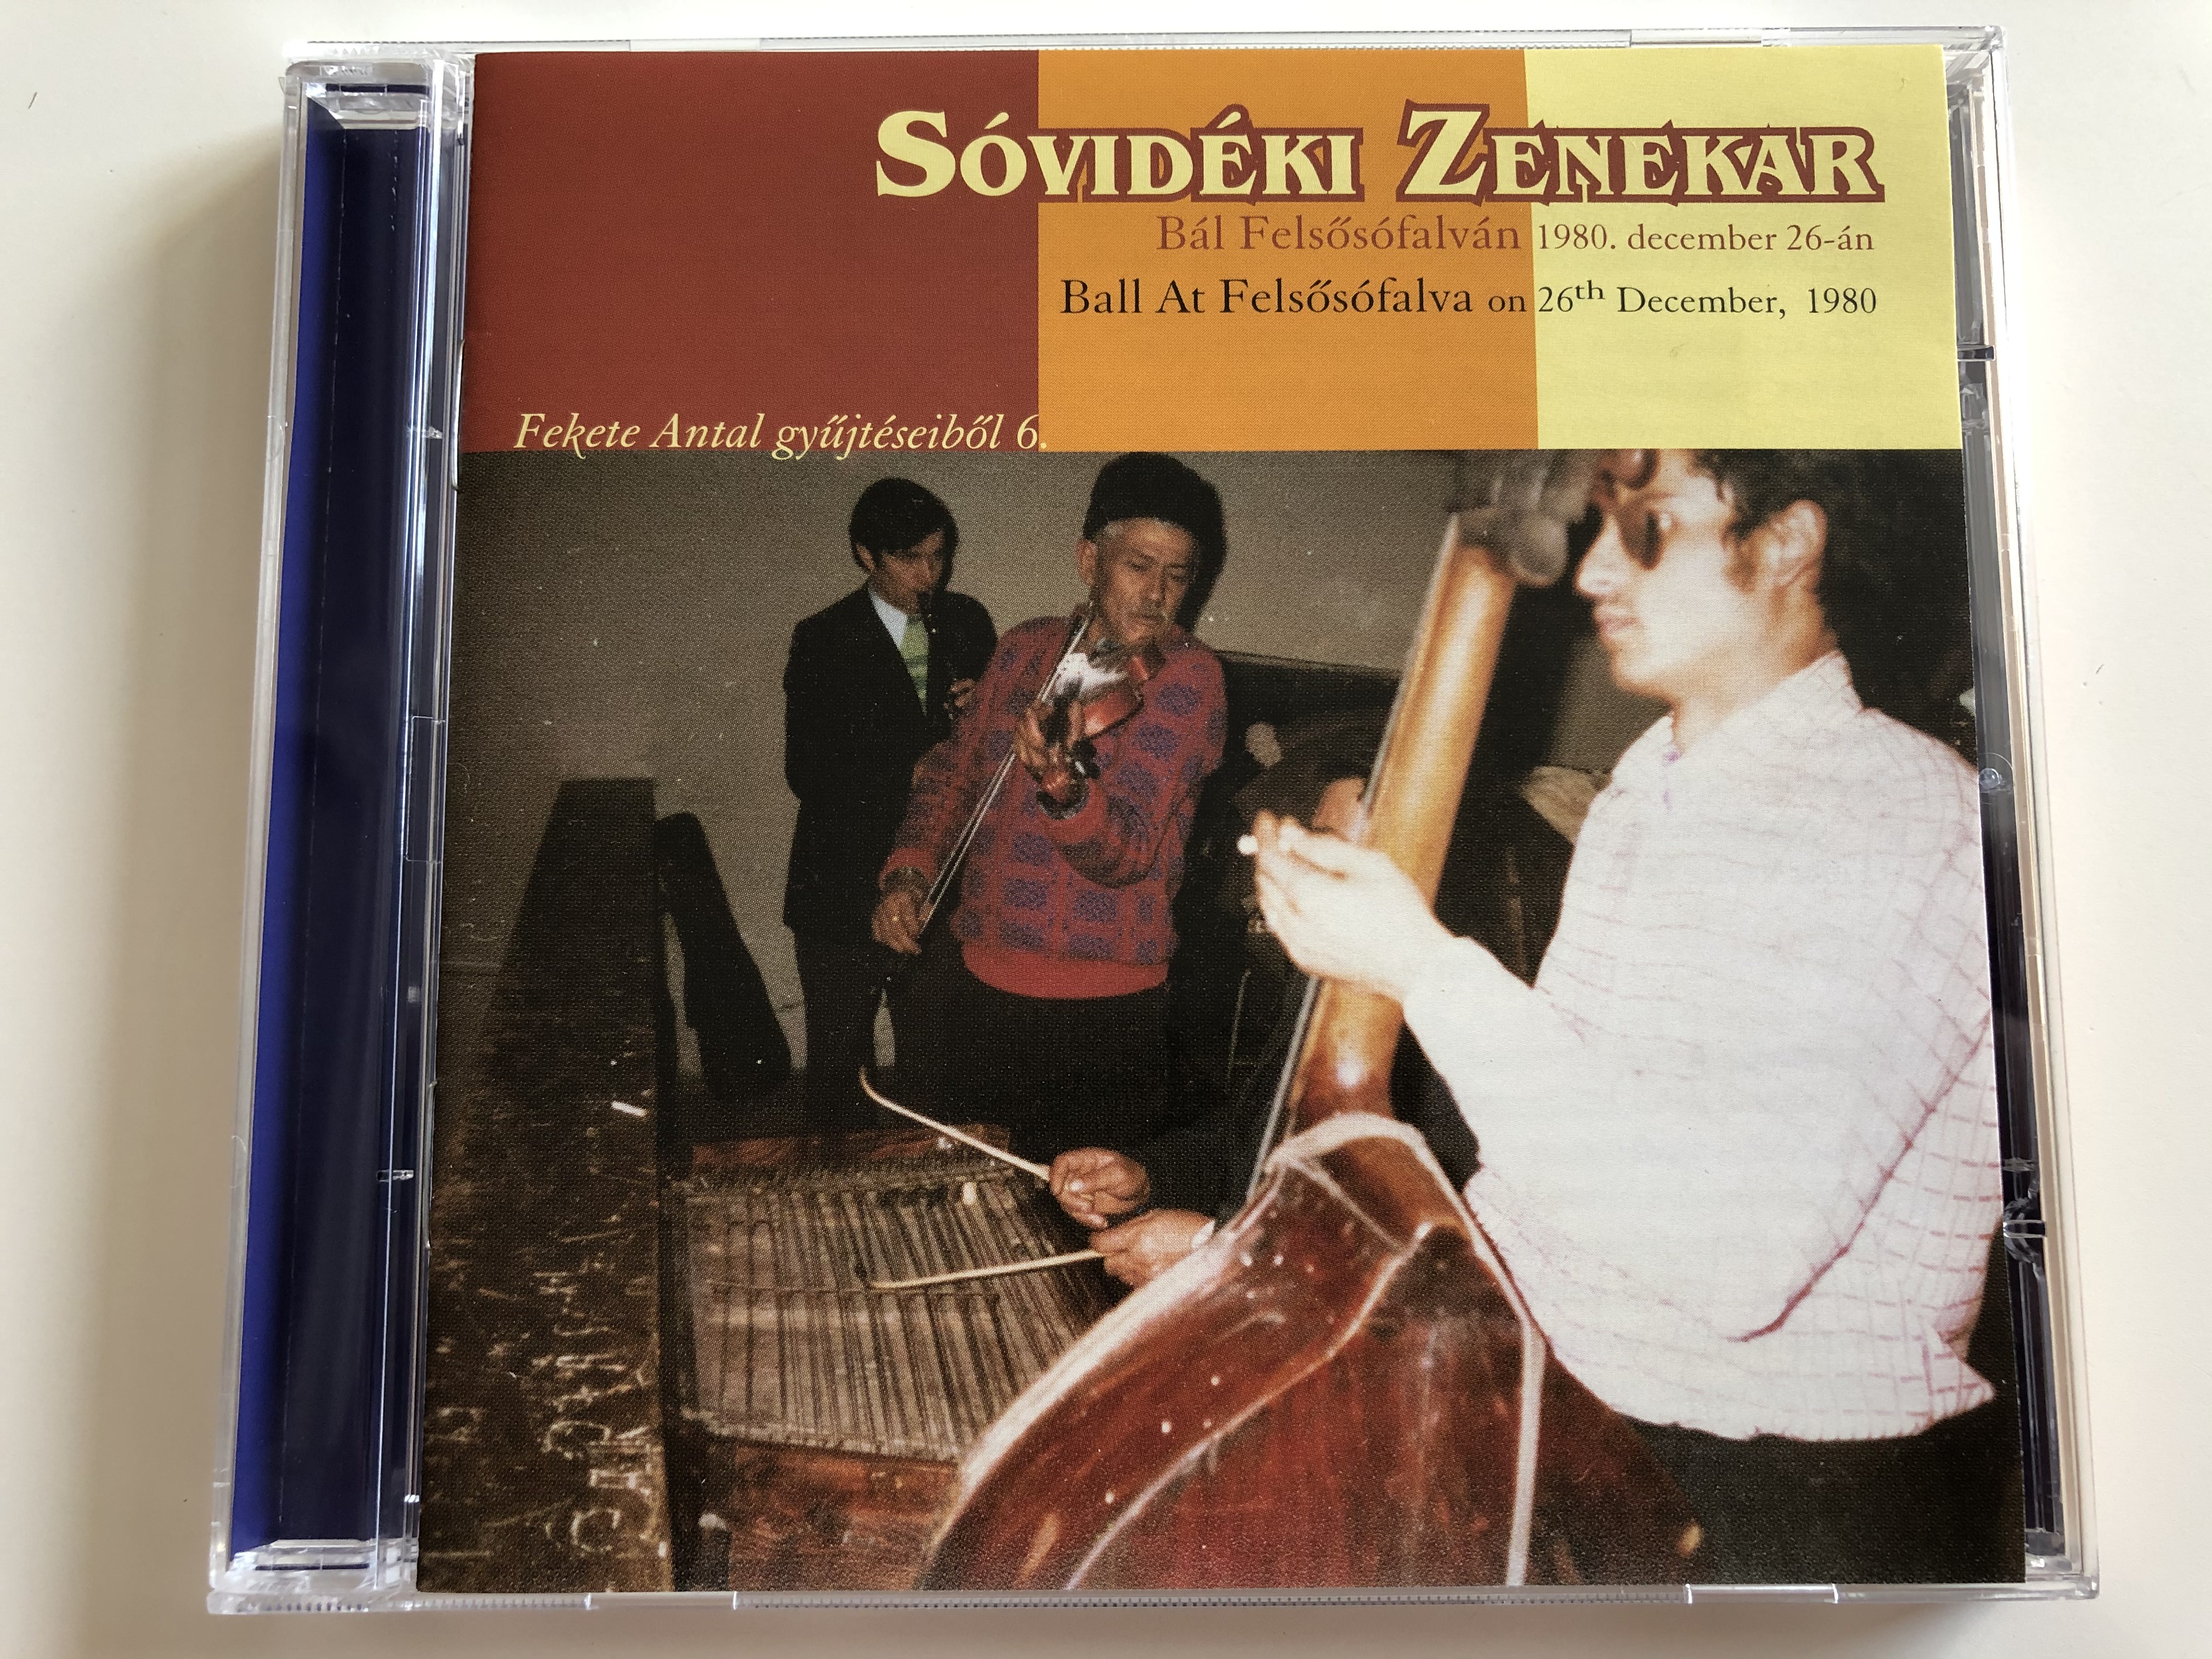 sovideki-zenekar-bal-felsofalvan-1980-december-26-an-ball-at-felsofalva-on-26th-decembar-1980-fekete-antal-gyujteseibol-6.-folk-europa-2007-fecd-031-1-.jpg